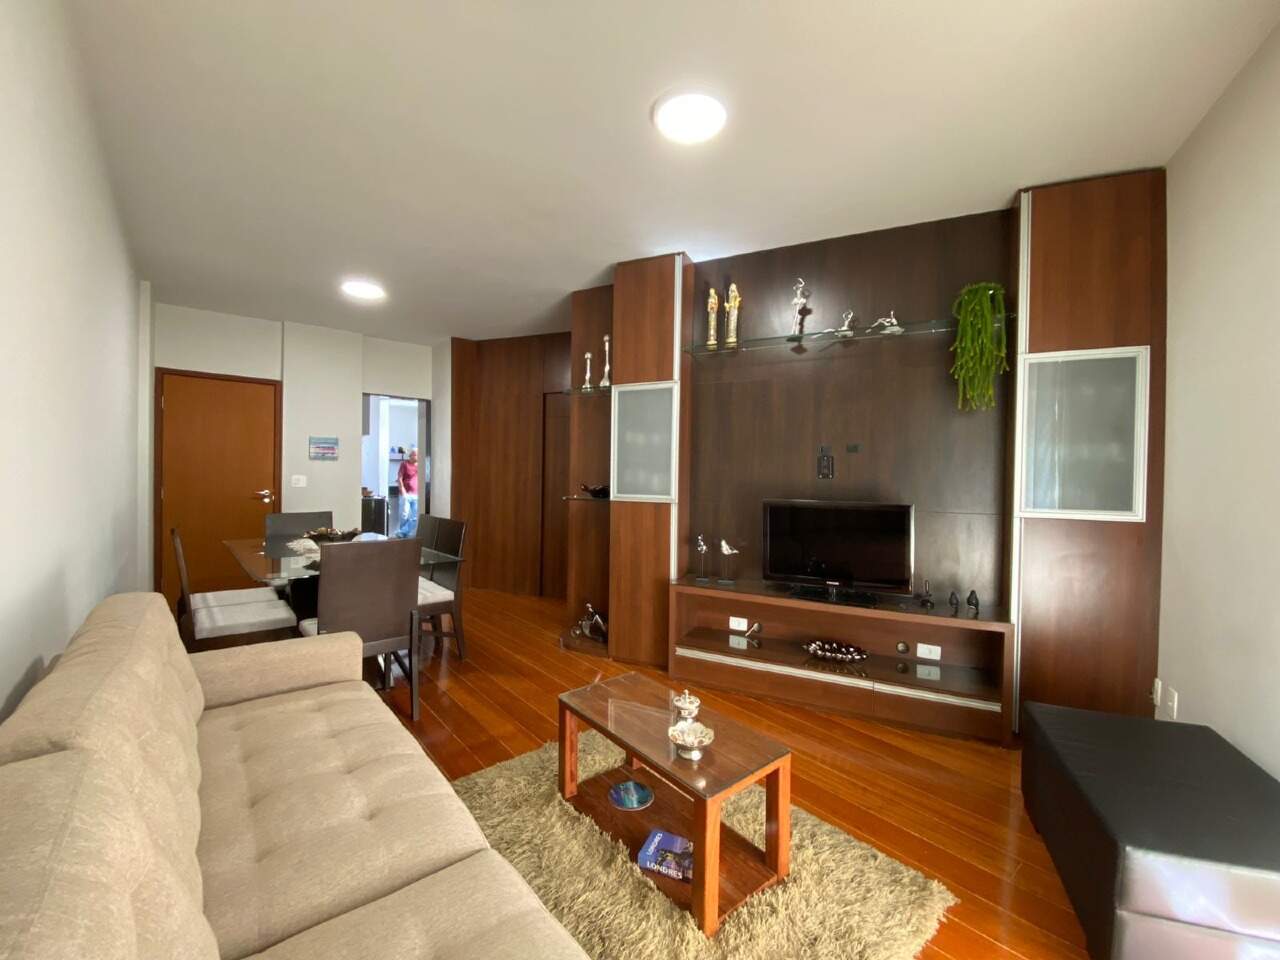 Imagem do imóvel Apartamento à venda, 3 quartos, 1 suíte, 1 vaga, Buritis - Belo Horizonte/MG